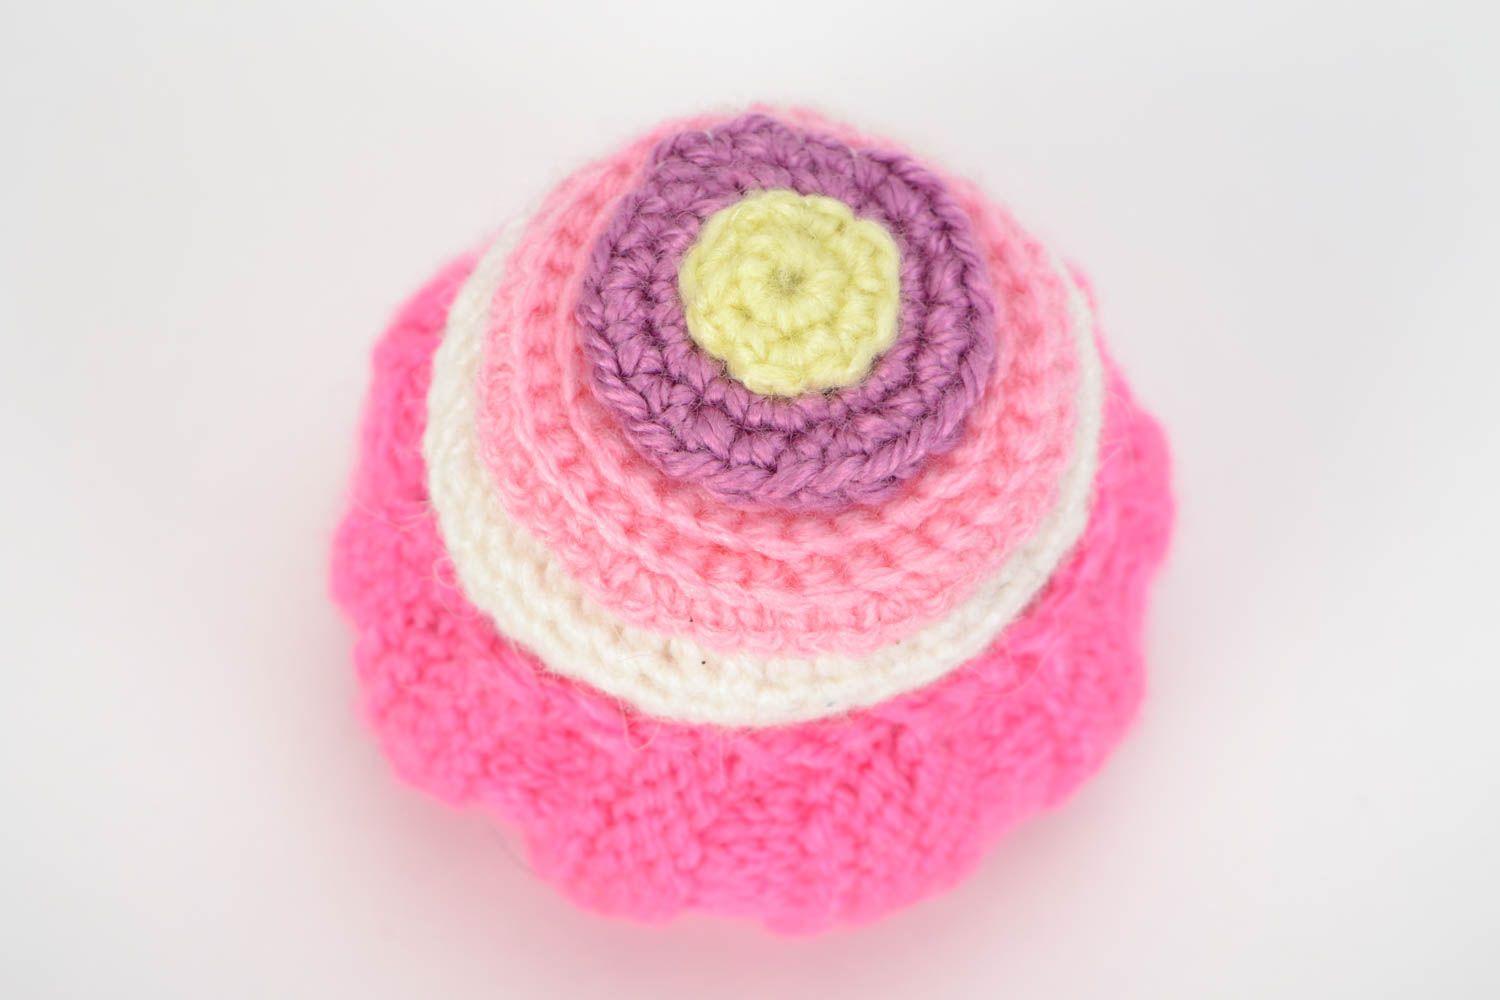 Пирожное связанное крючком розовое мягкое миниатюрное для декора дома хэнд мэйд фото 3